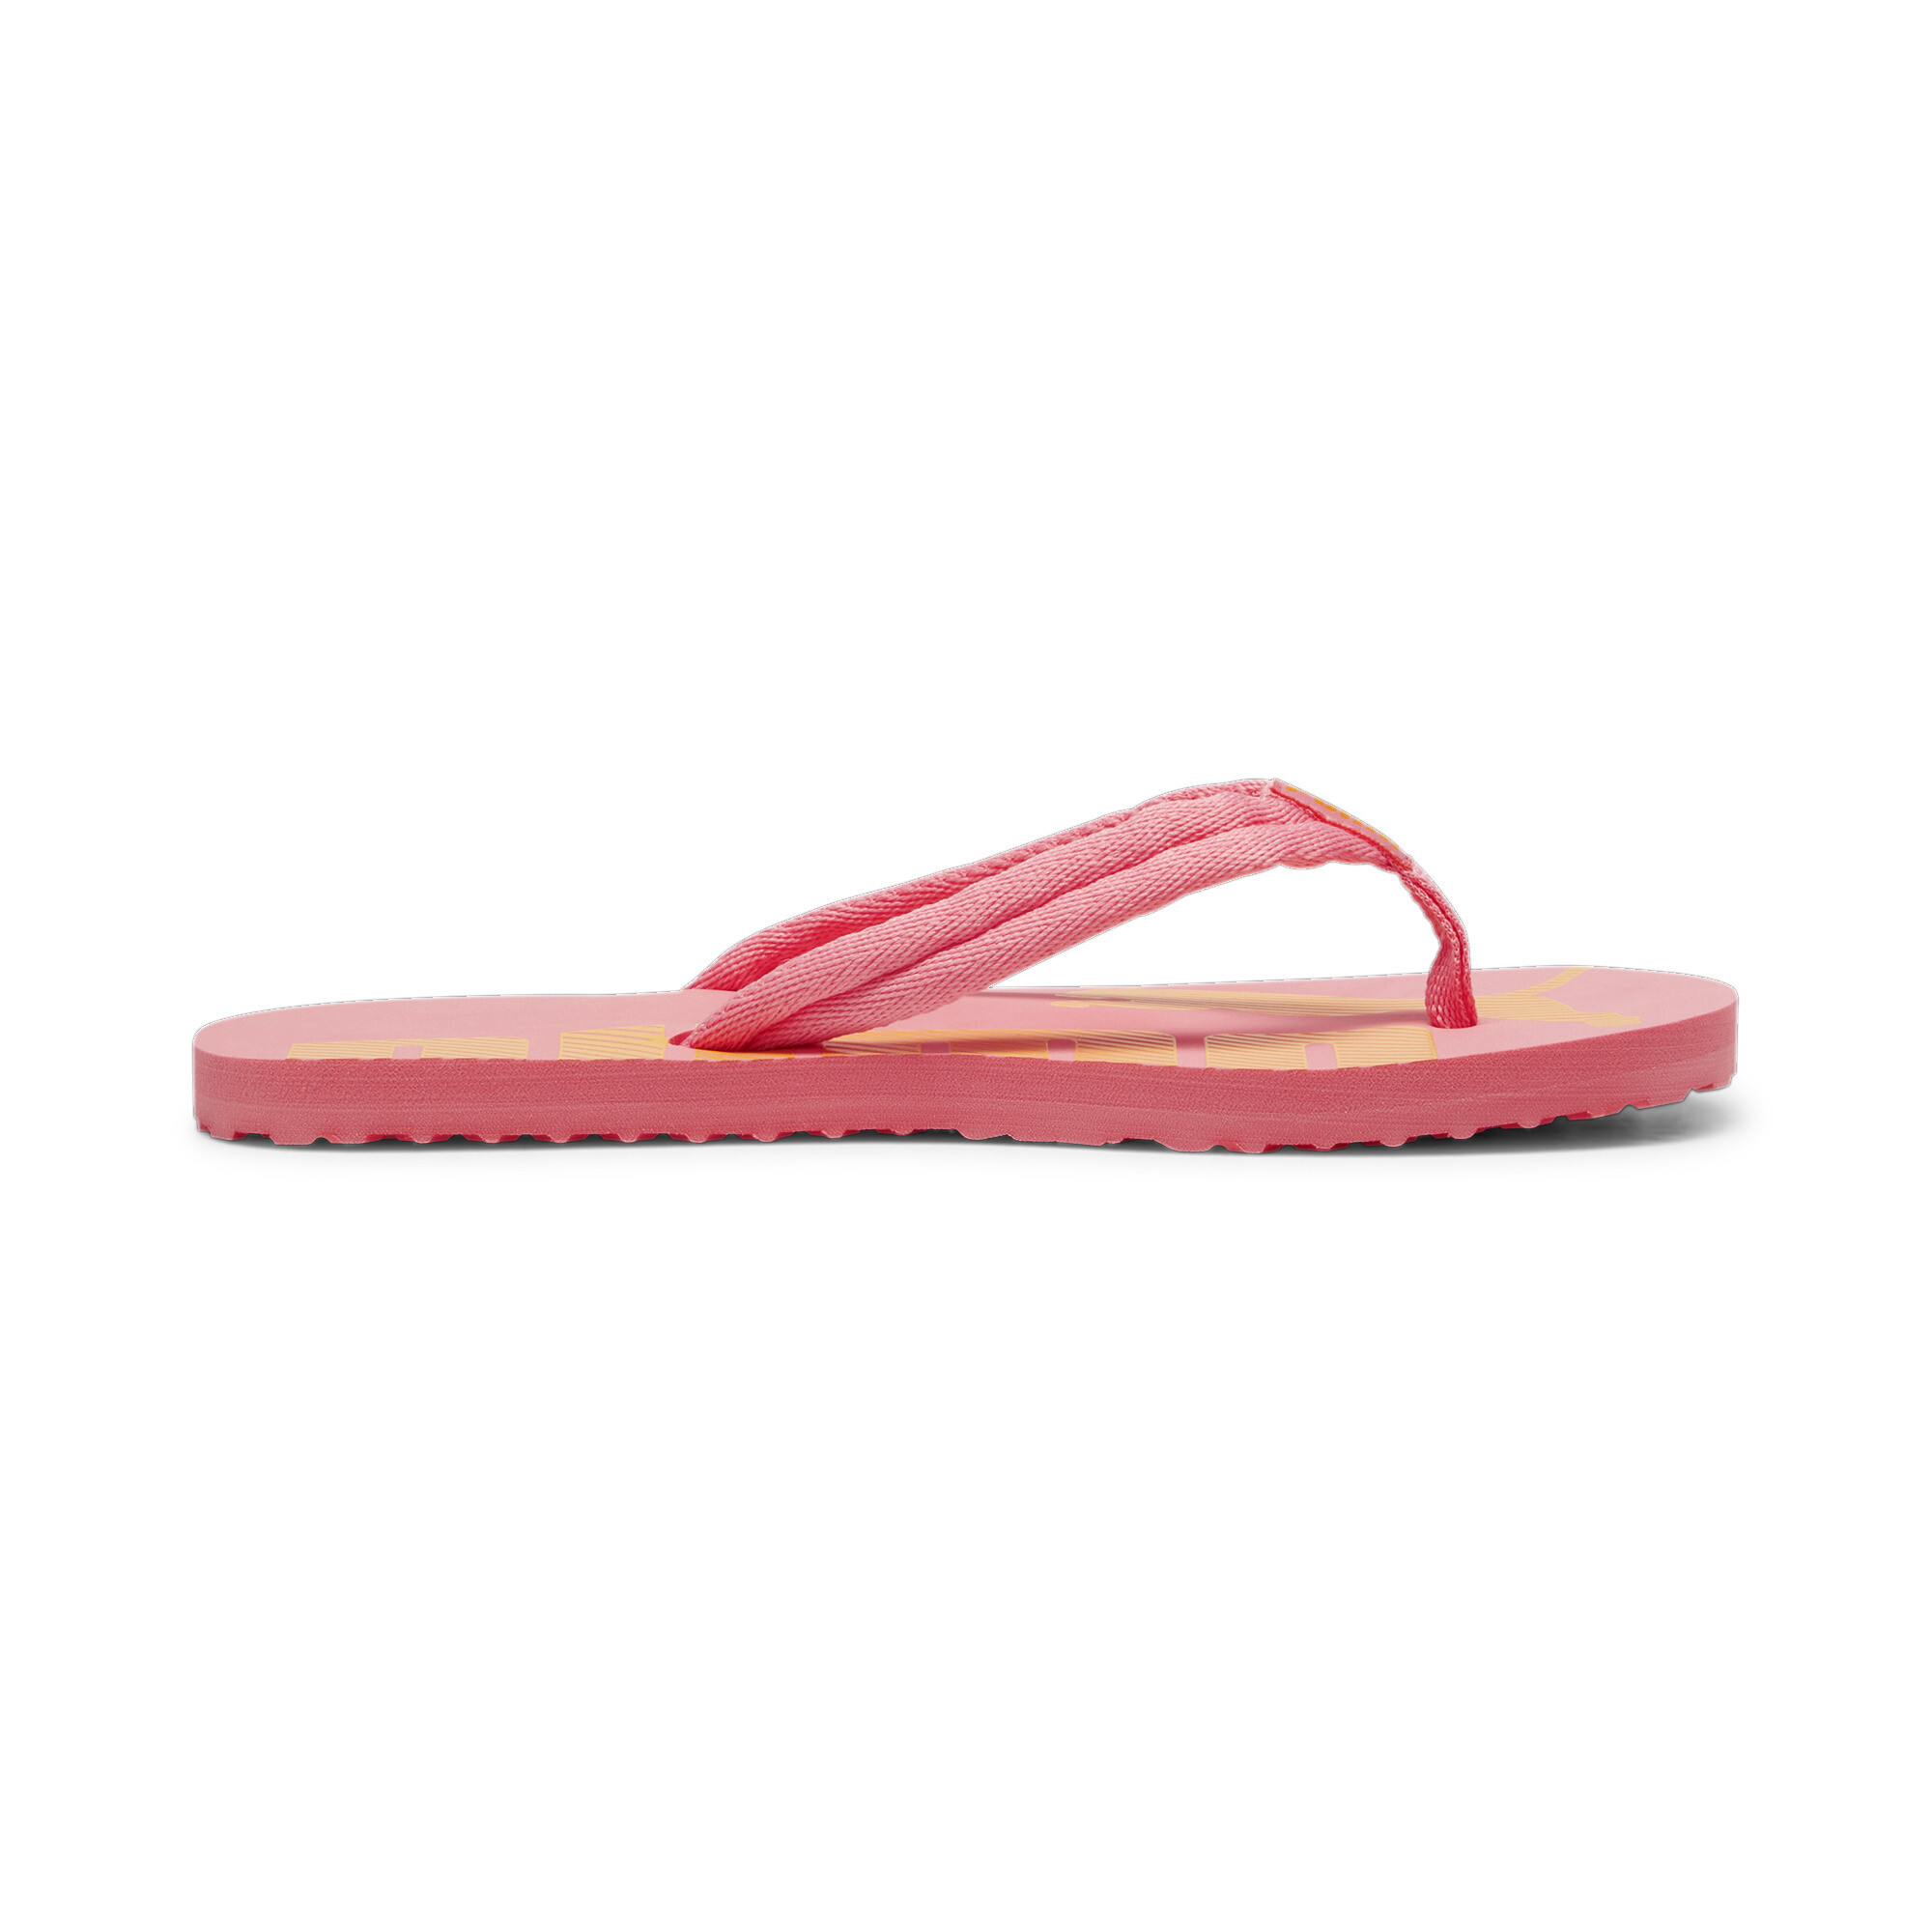 Men's PUMA Epic Flip V2 Sandals In Pink, Size EU 46